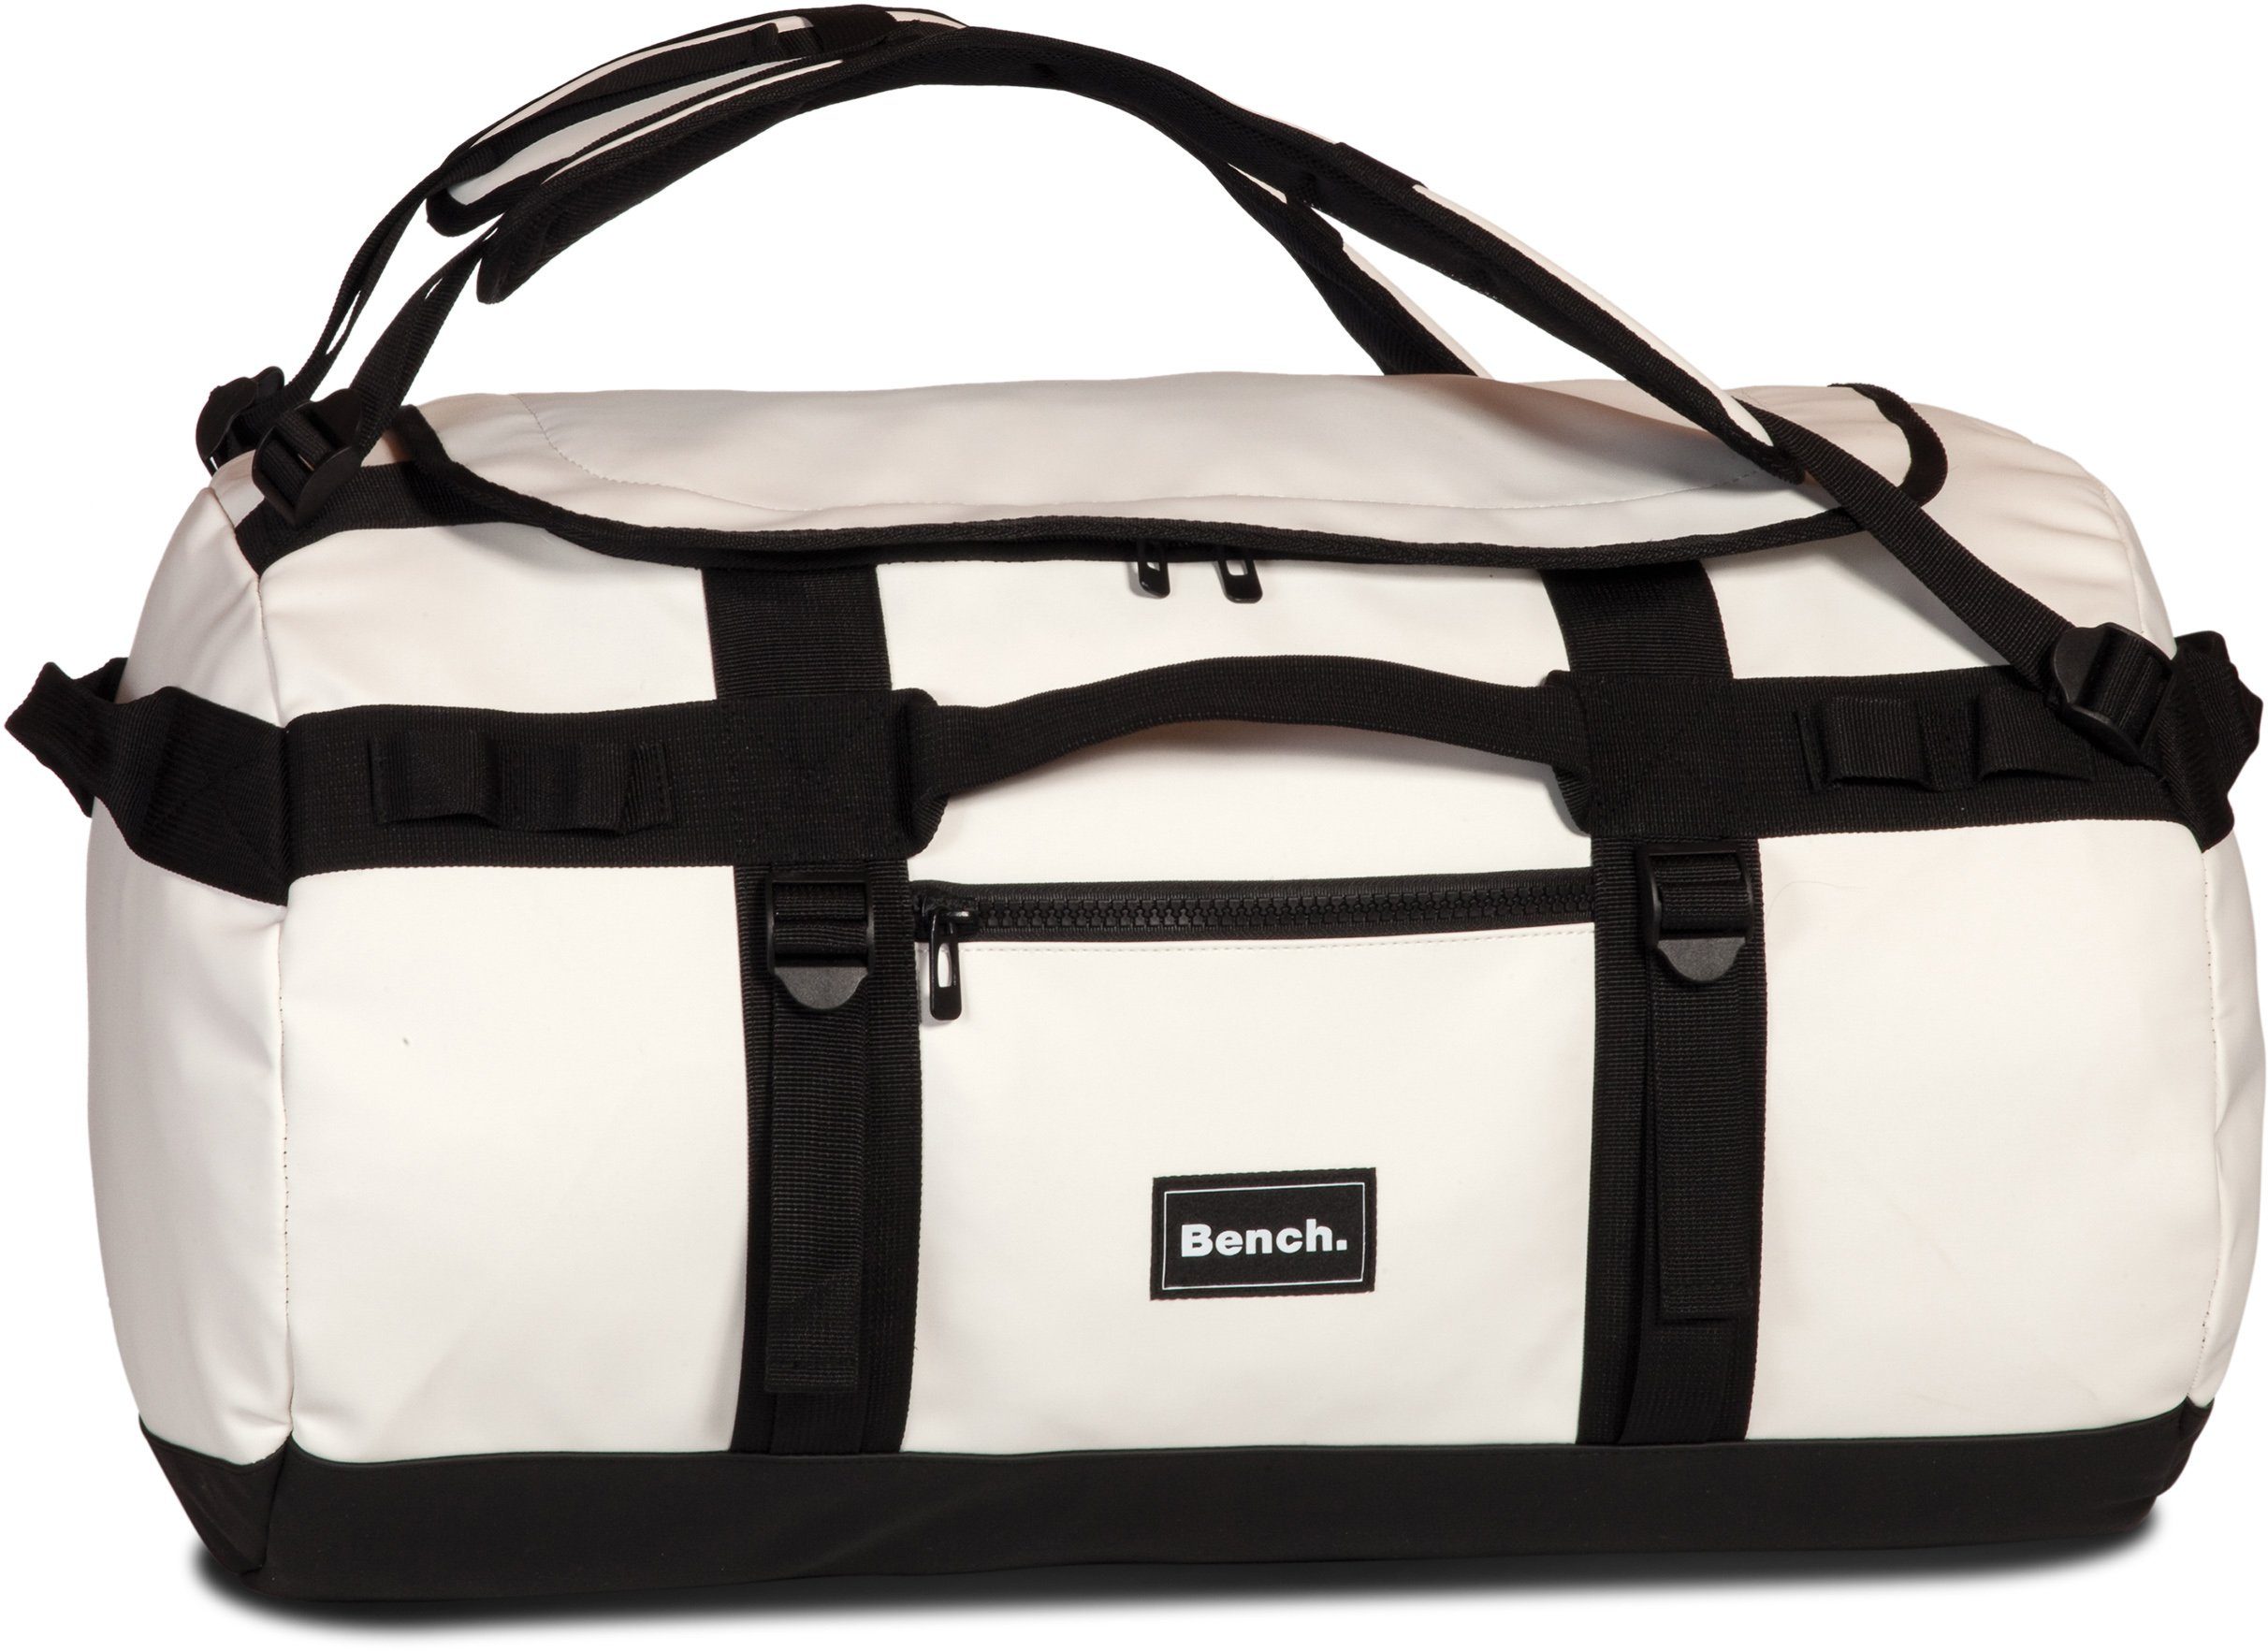 Bench. Reisetasche Hydro, weiß, mit Rucksackfunktion; aus wasserabweisendem Material White | Sporttaschen